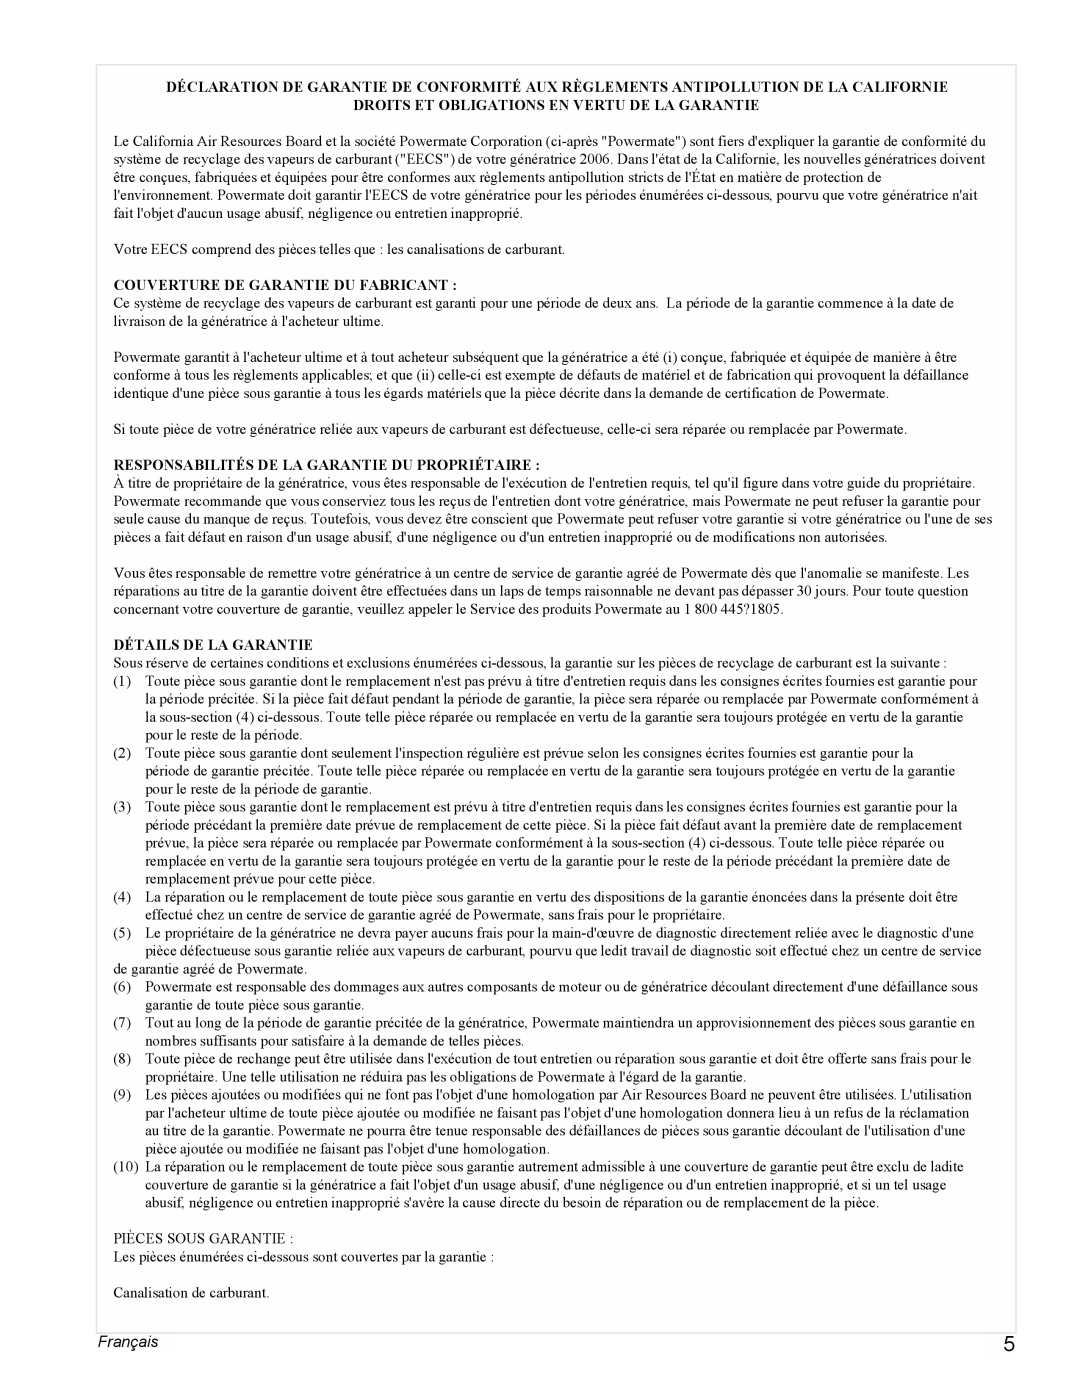 Powermate PMC545004 manual Français, Droits Et Obligations En Vertu De La Garantie, Couverture De Garantie Du Fabricant 